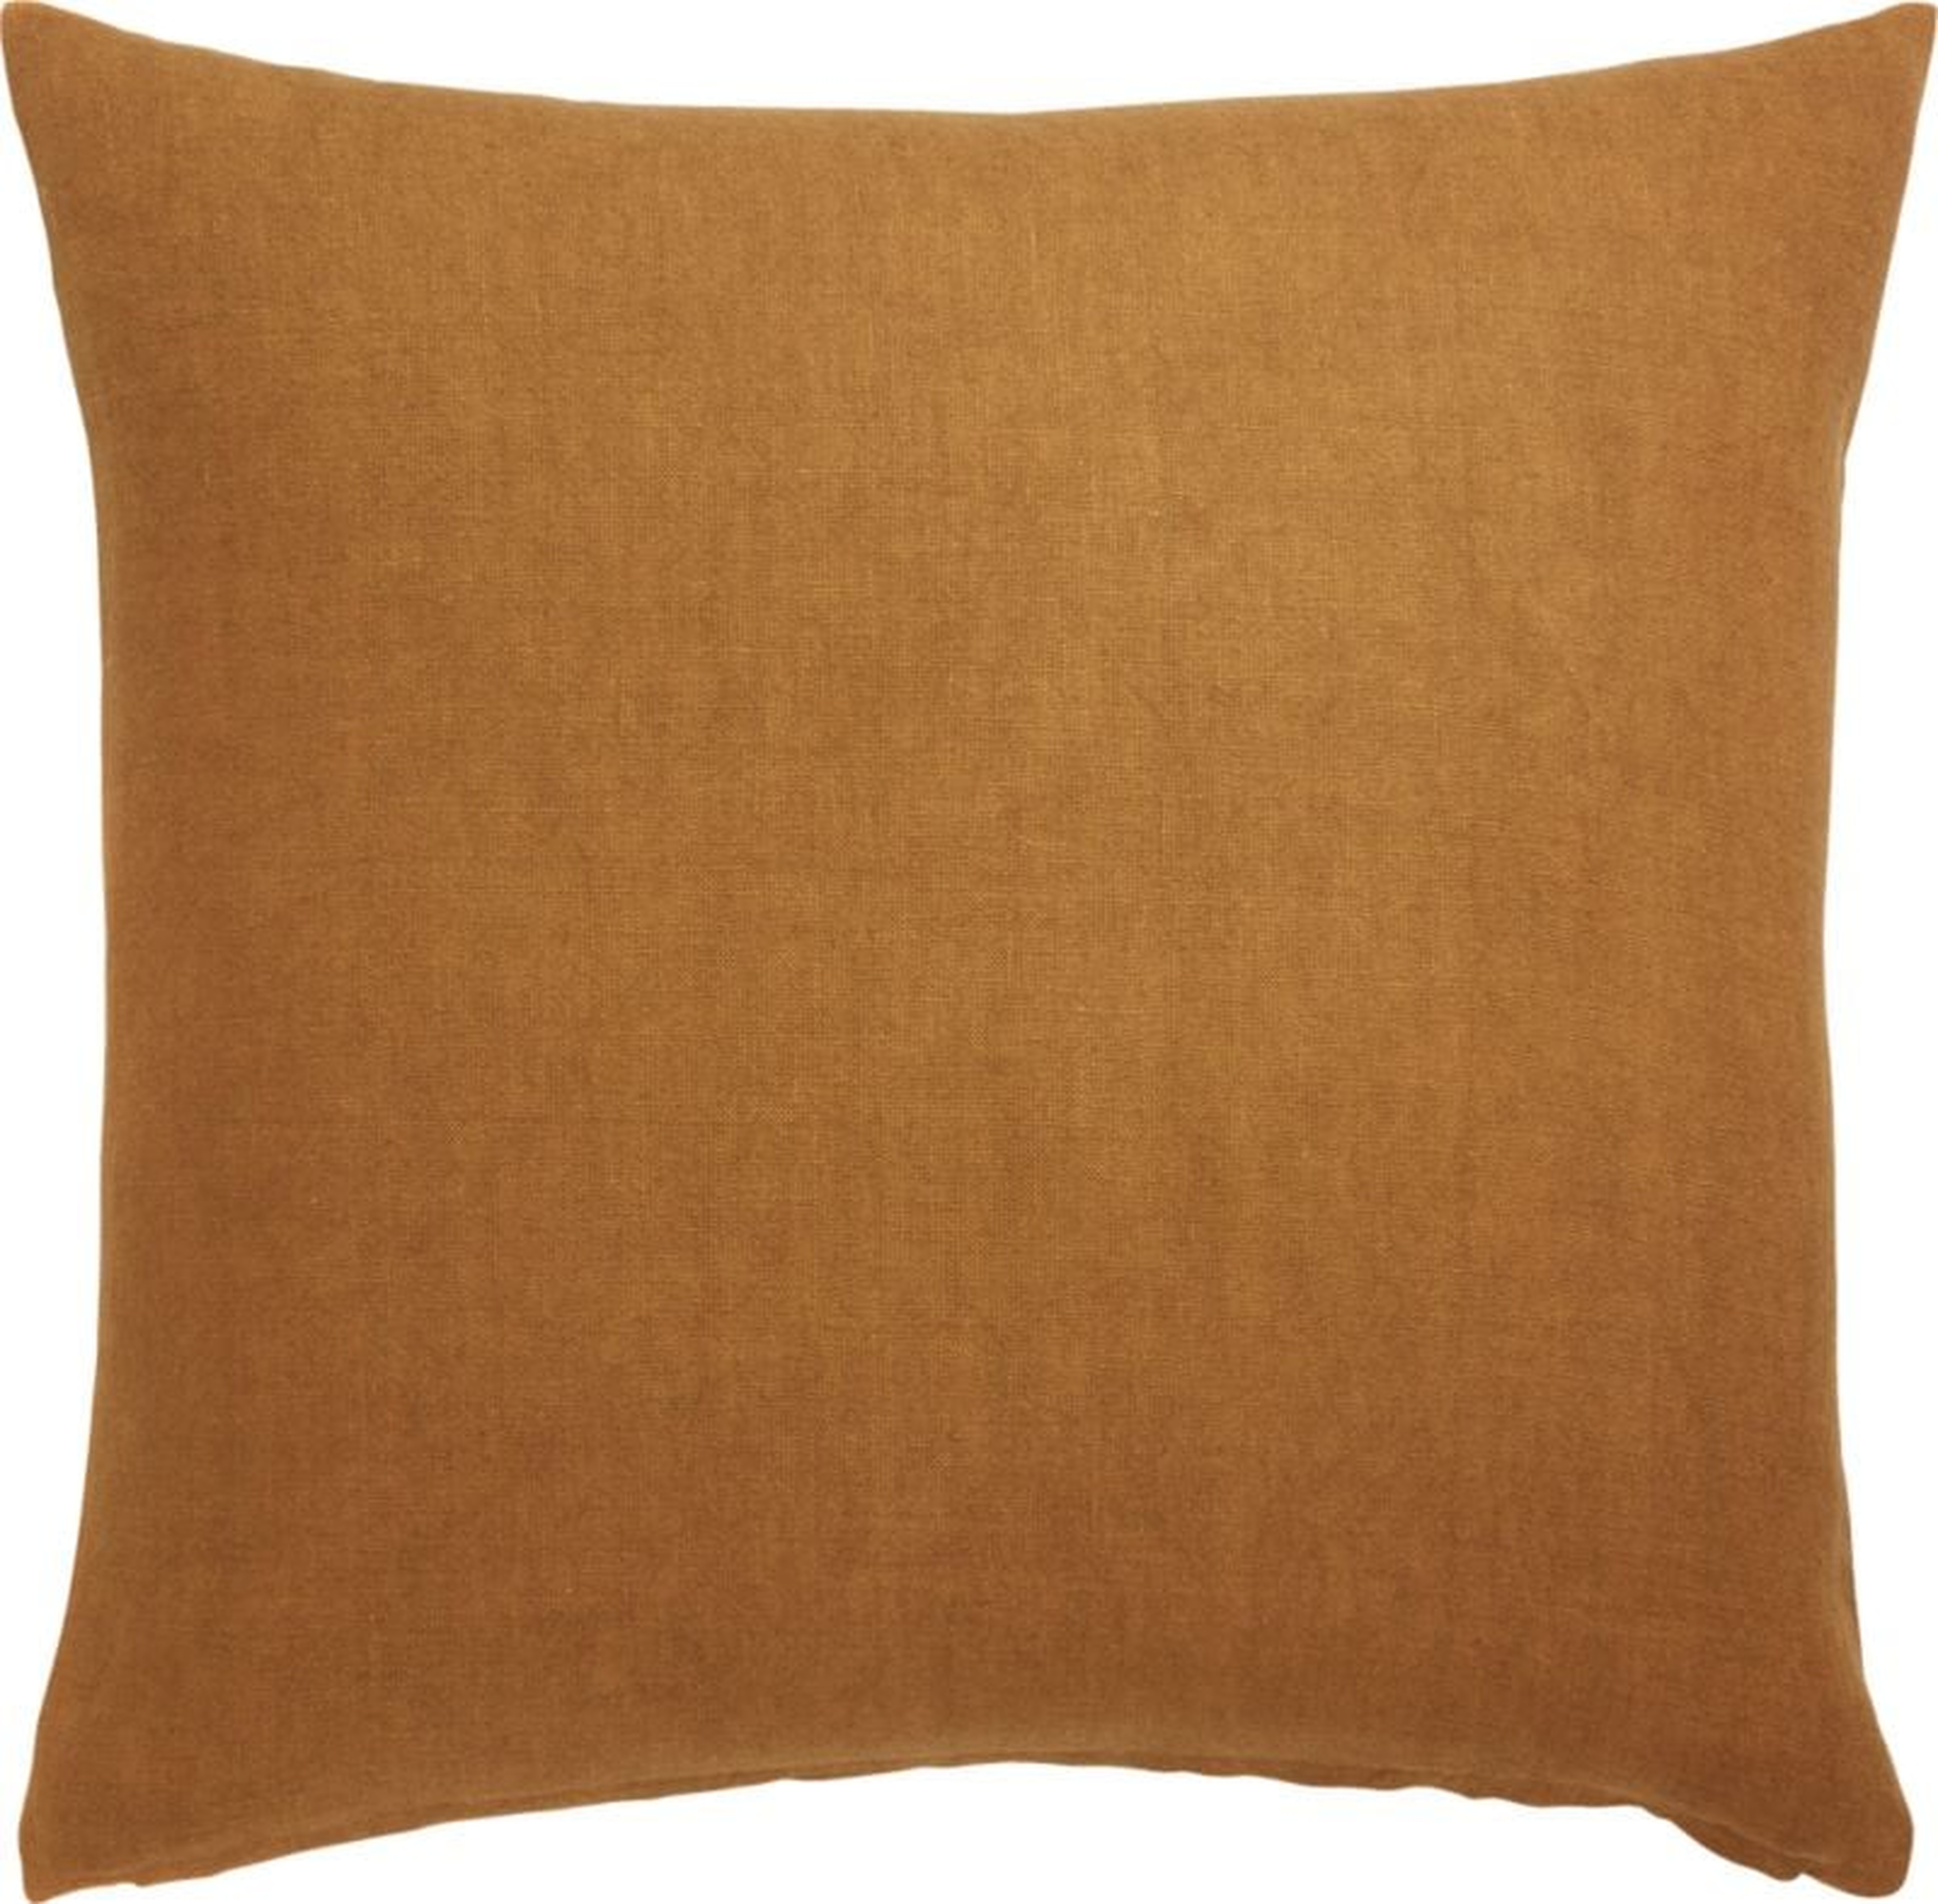 Linon Copper Pillow, Down-Alternative Insert, 20" x 20" - CB2